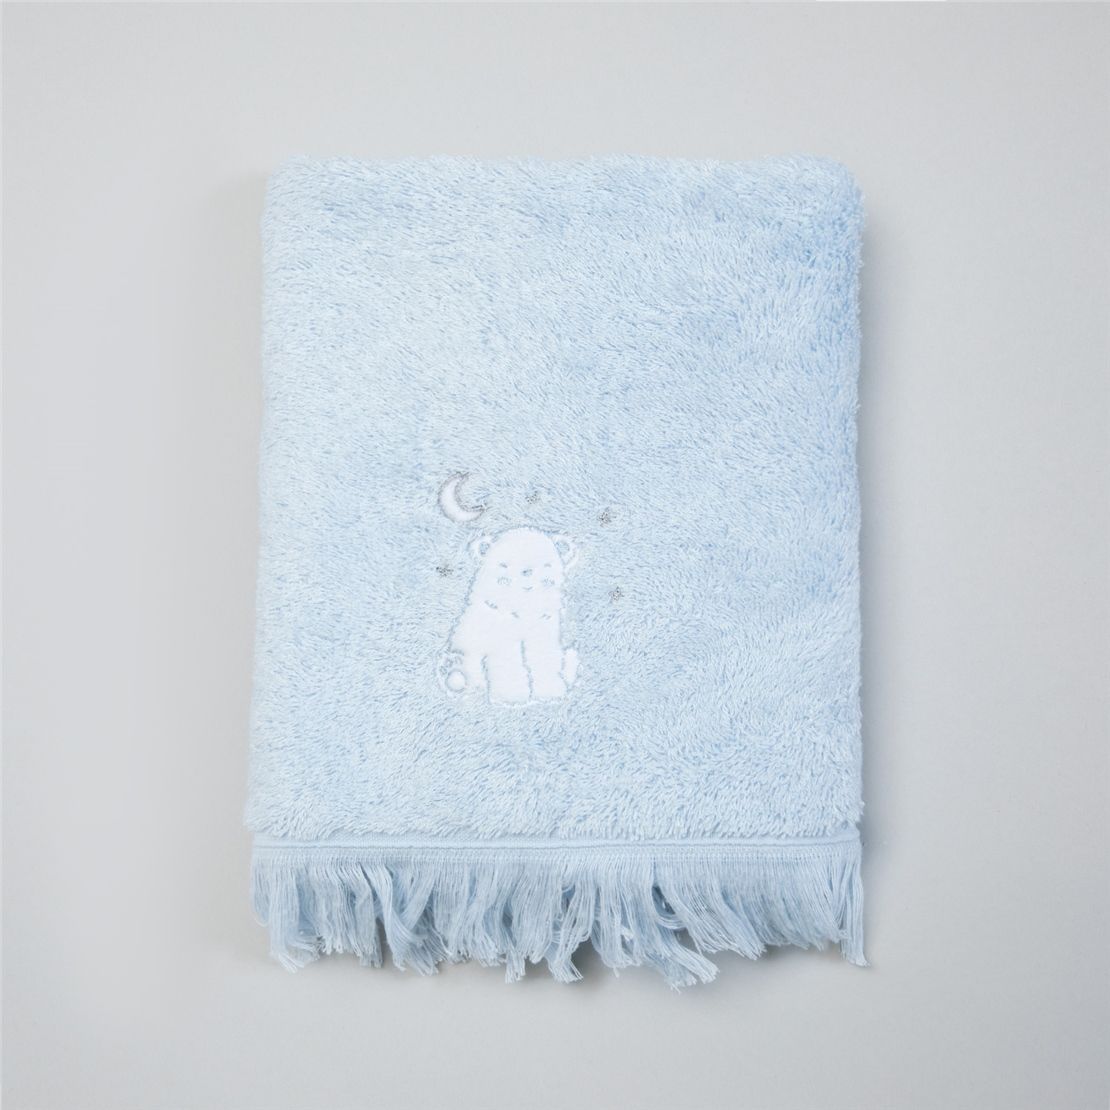 М'який дитячий рушник для обличчя NORTH STAR розмір 50х90 см, голубий